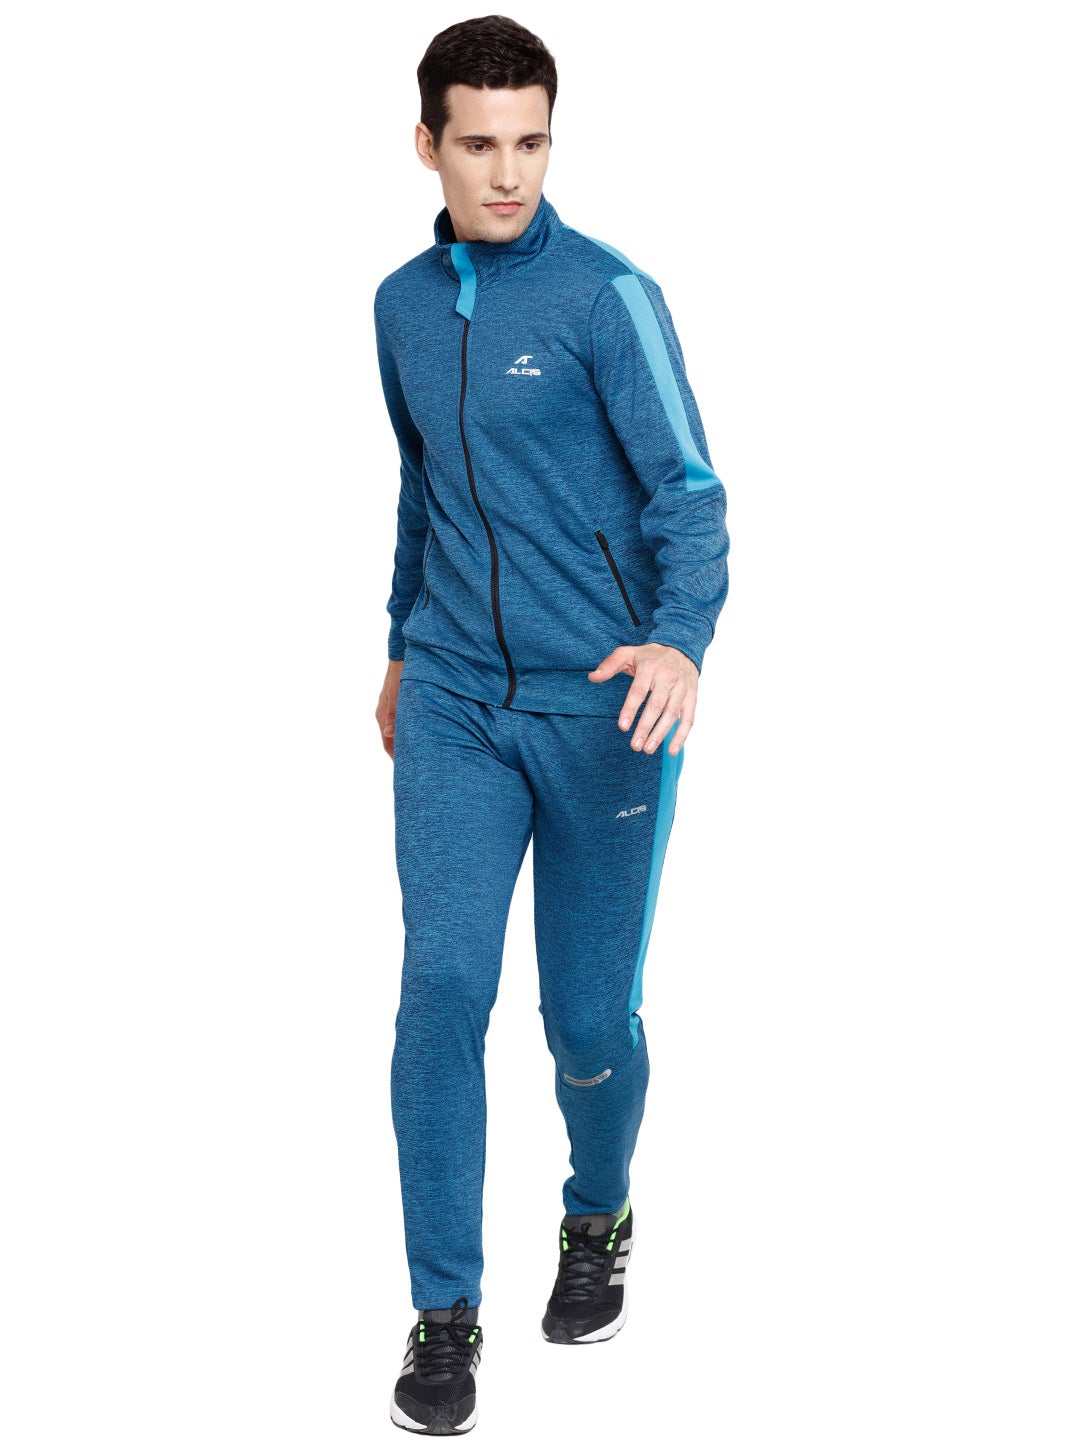 Alcis Men Solid Blue Track Suit